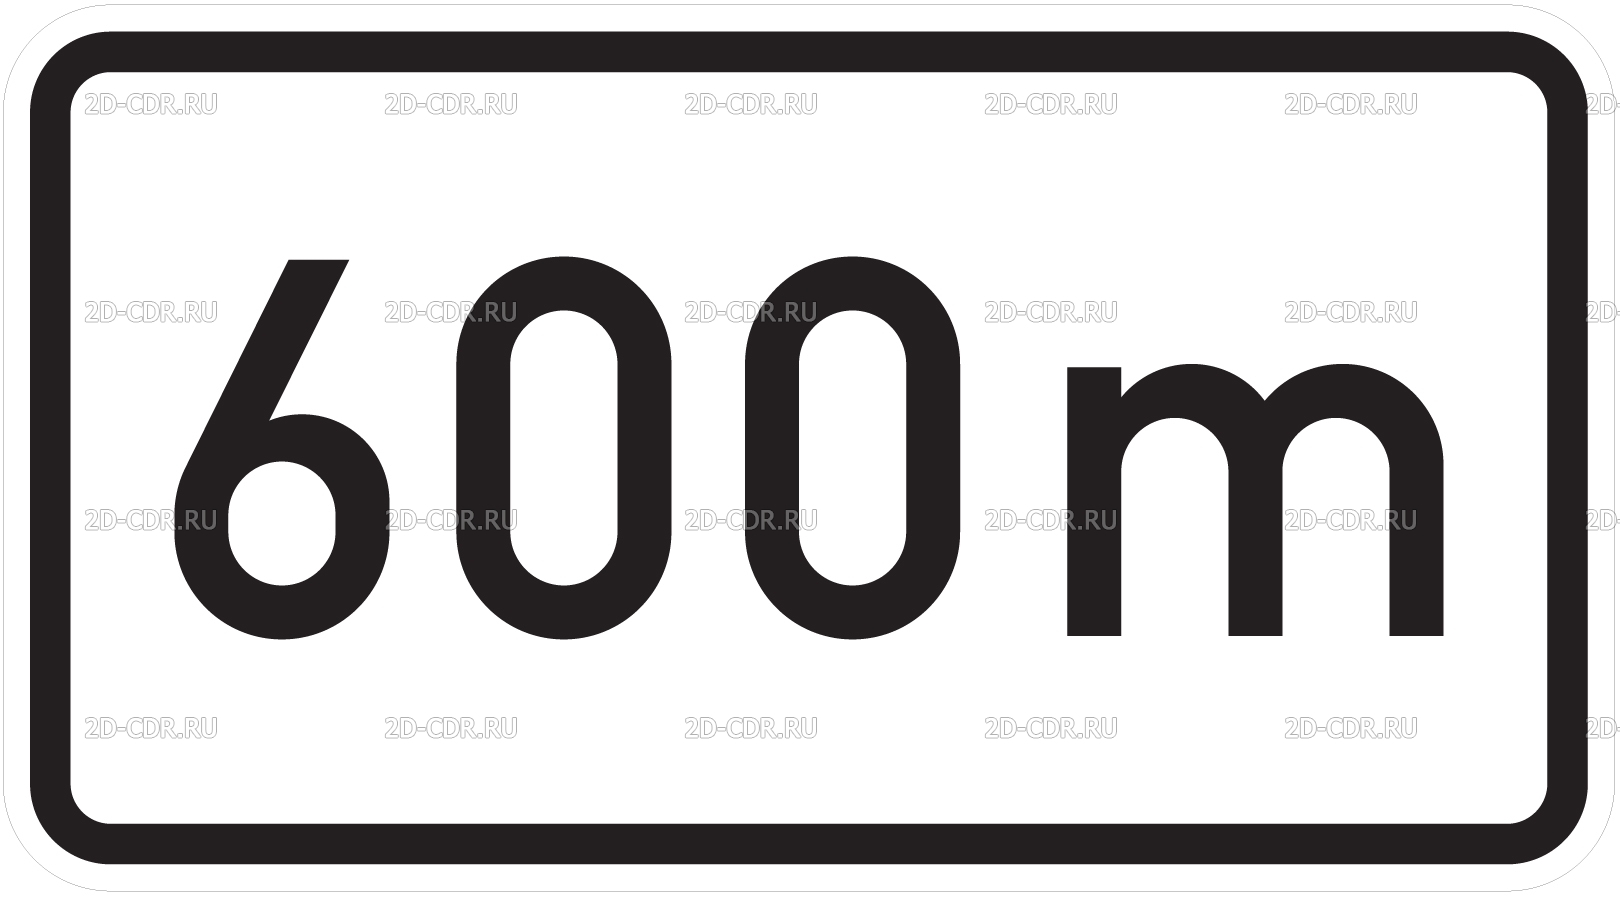 200 1 17 2. 8.1.1 Дорожный знак. Знак 600 м. 8.2.1 600м дорожный знак. Знак 8.2.1 200.